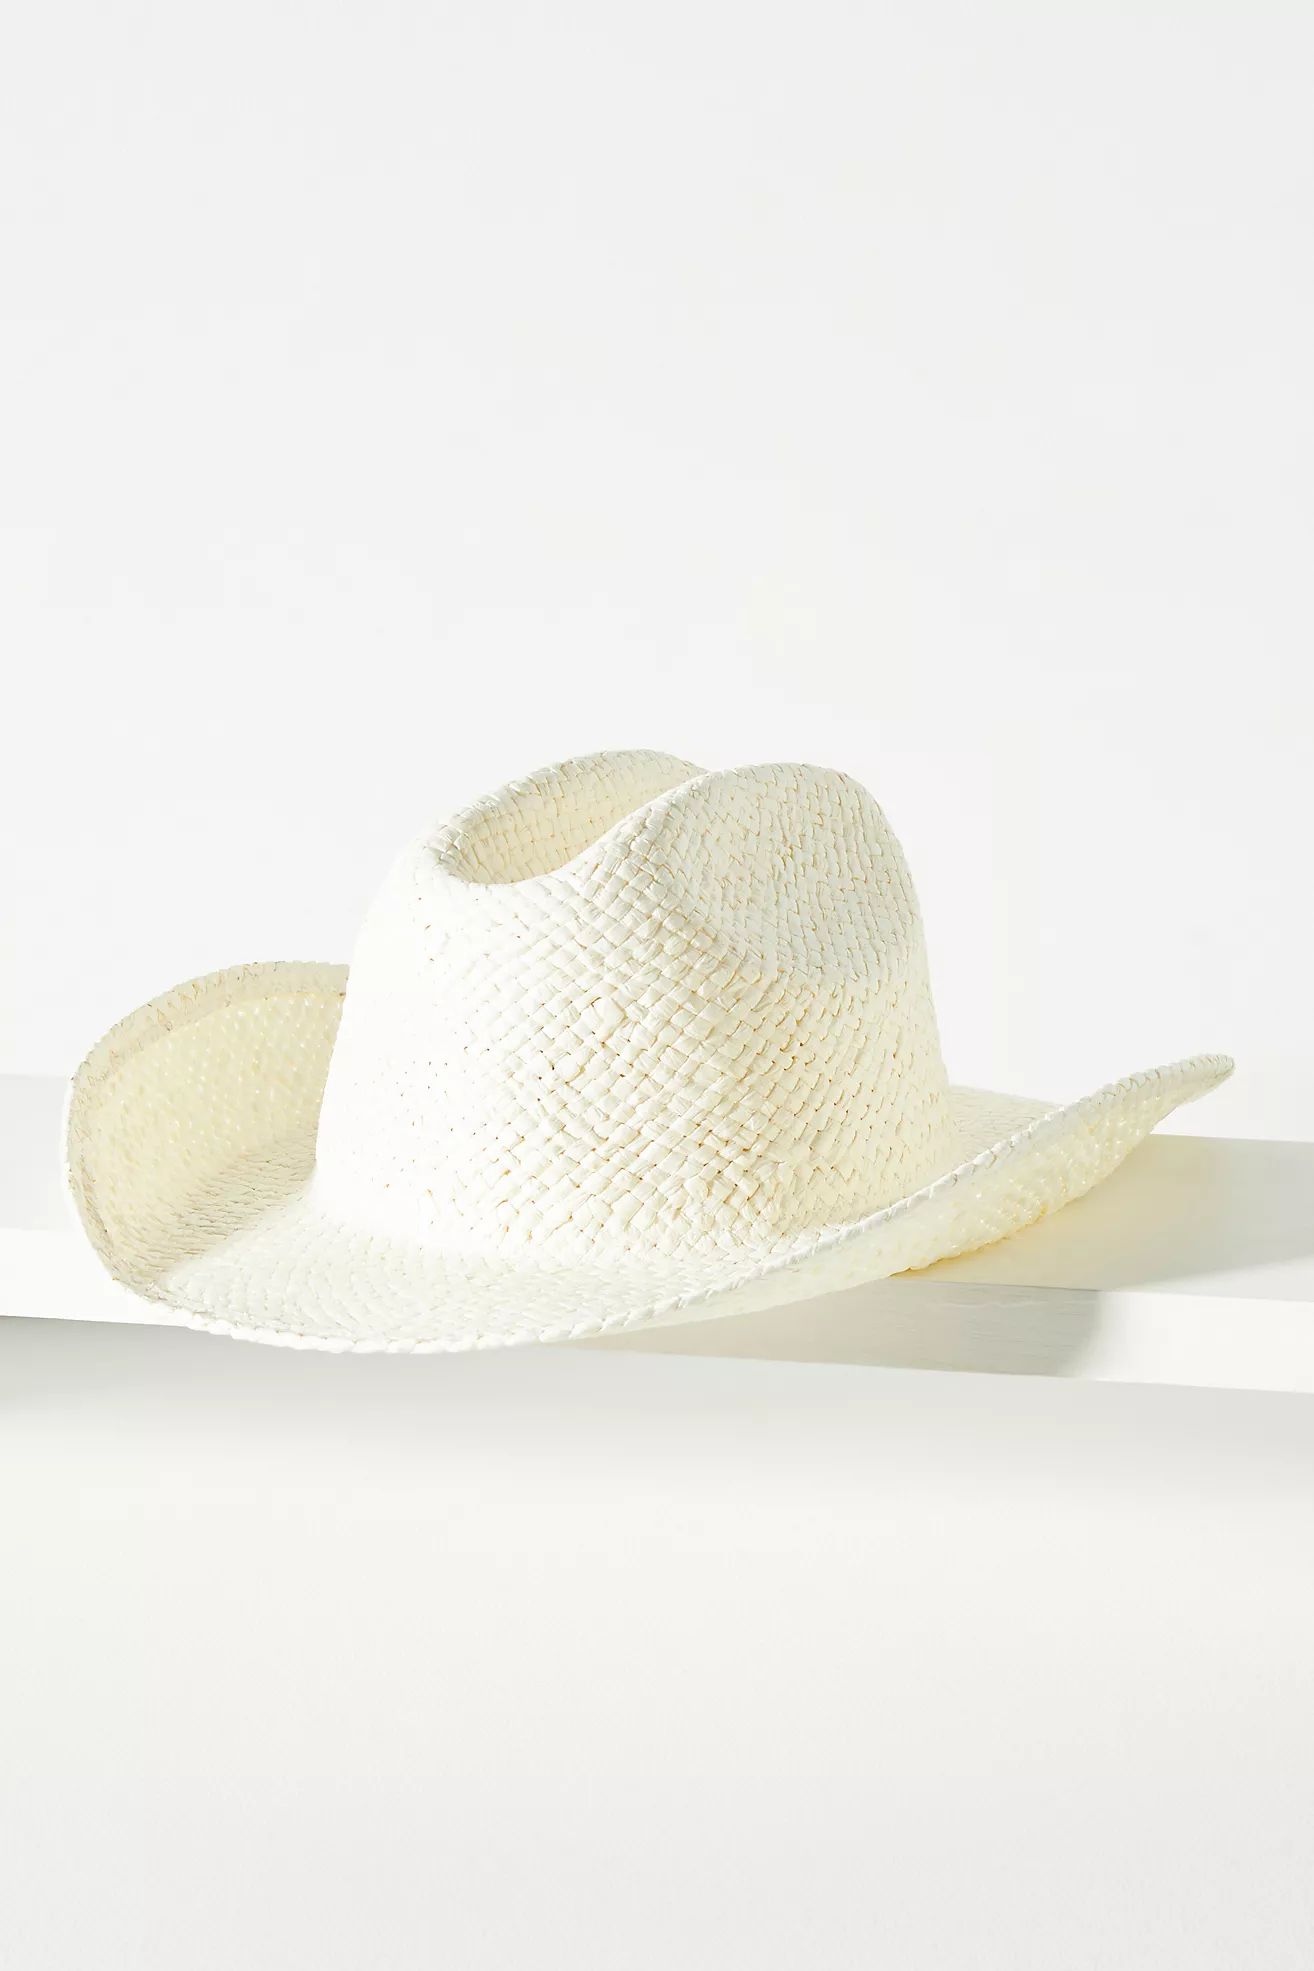 Wyeth Straw Cowboy Hat | Anthropologie (US)